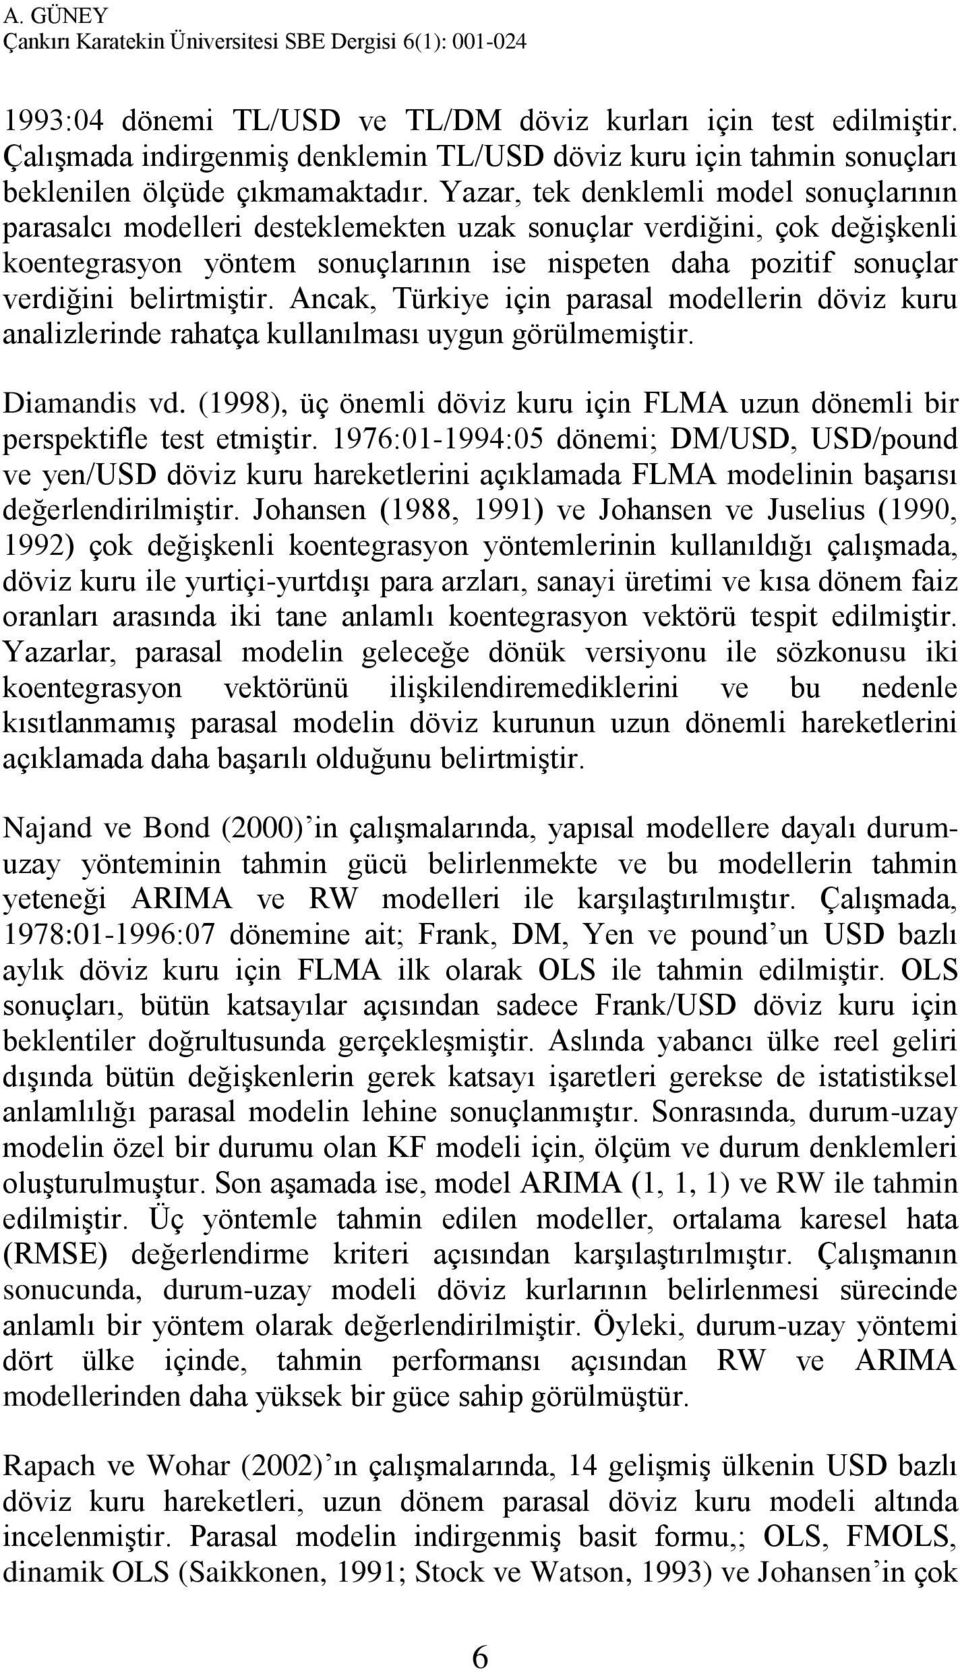 belirtmiştir. Ancak, Türkiye için parasal modellerin döviz kuru analizlerinde rahatça kullanılması uygun görülmemiştir. Diamandis vd.